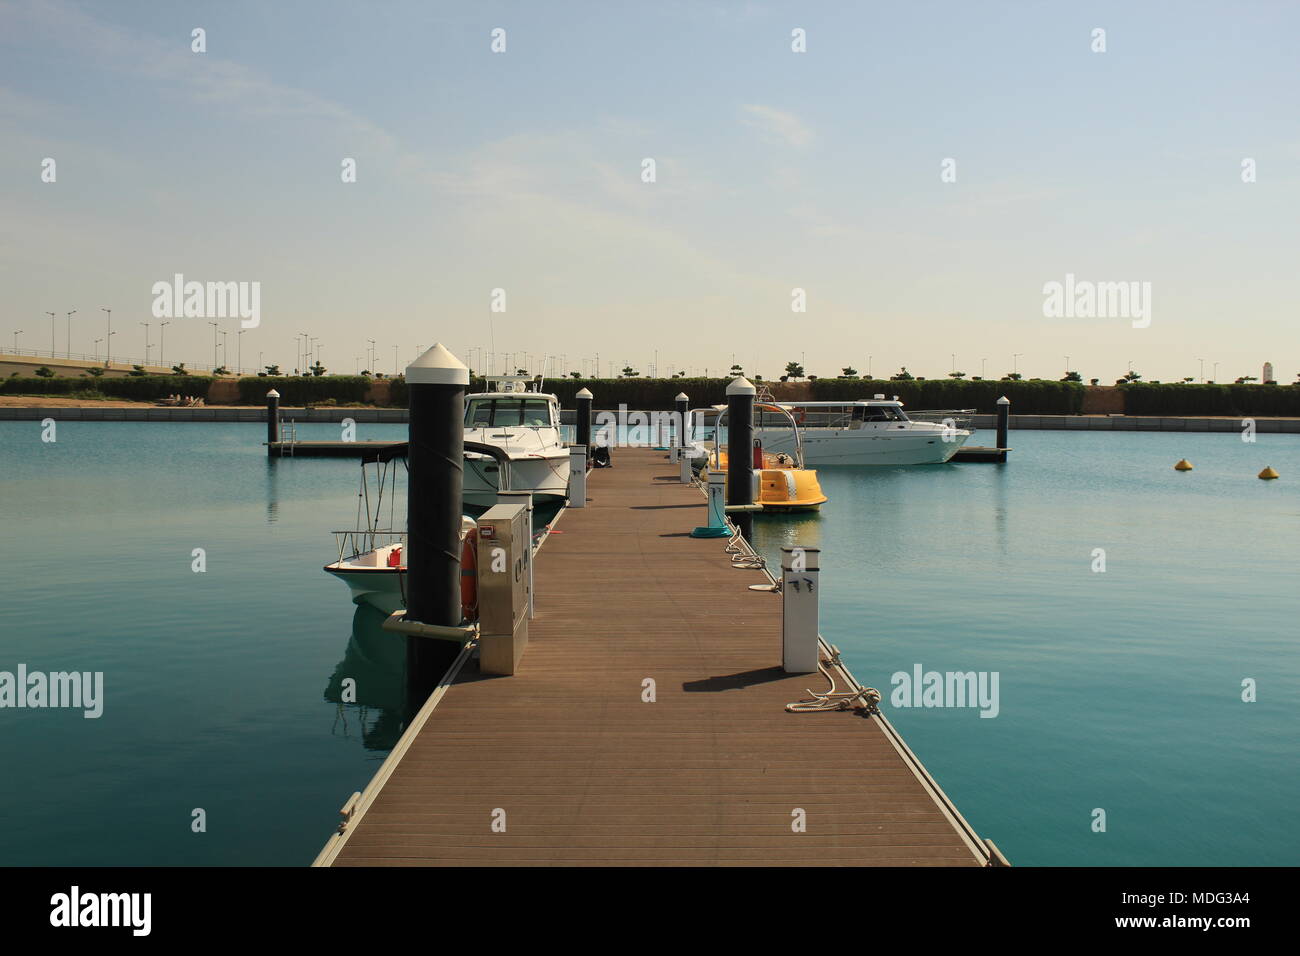 Einen schönen und modernen Blick auf einen kleinen Hafen, geparkt mit Boote und Yacht. Einen Nachmittag Blick auf das ruhige Wasser, mit den Gehweg perfekt ausgerichtet. Stockfoto